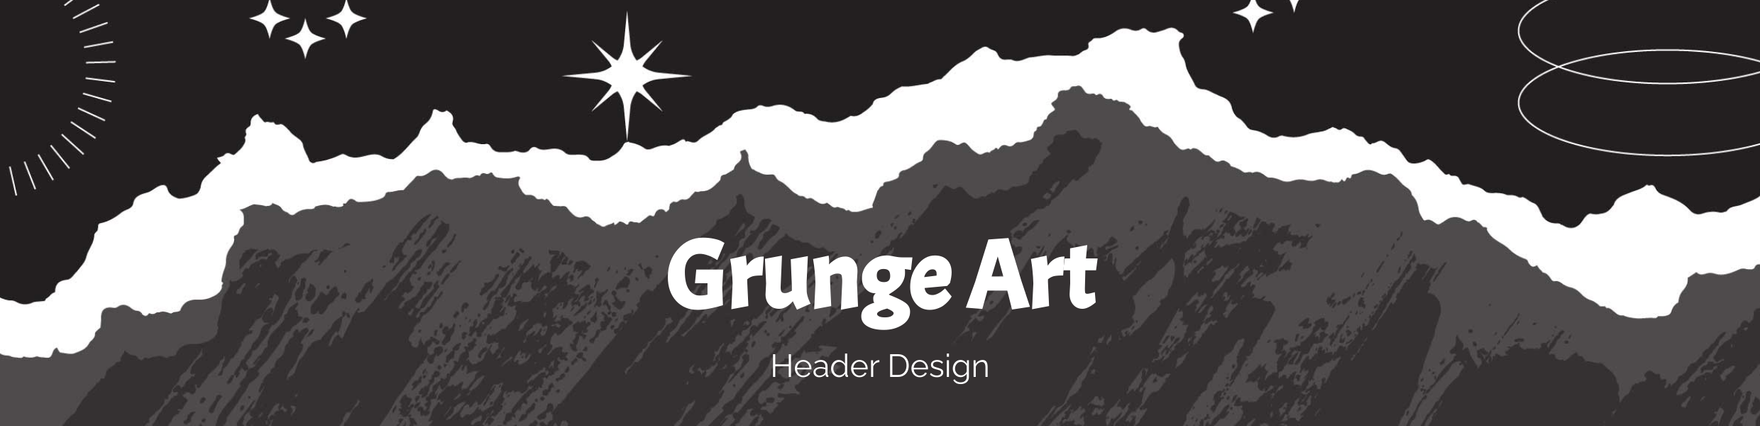 Grunge Art Header Design Template